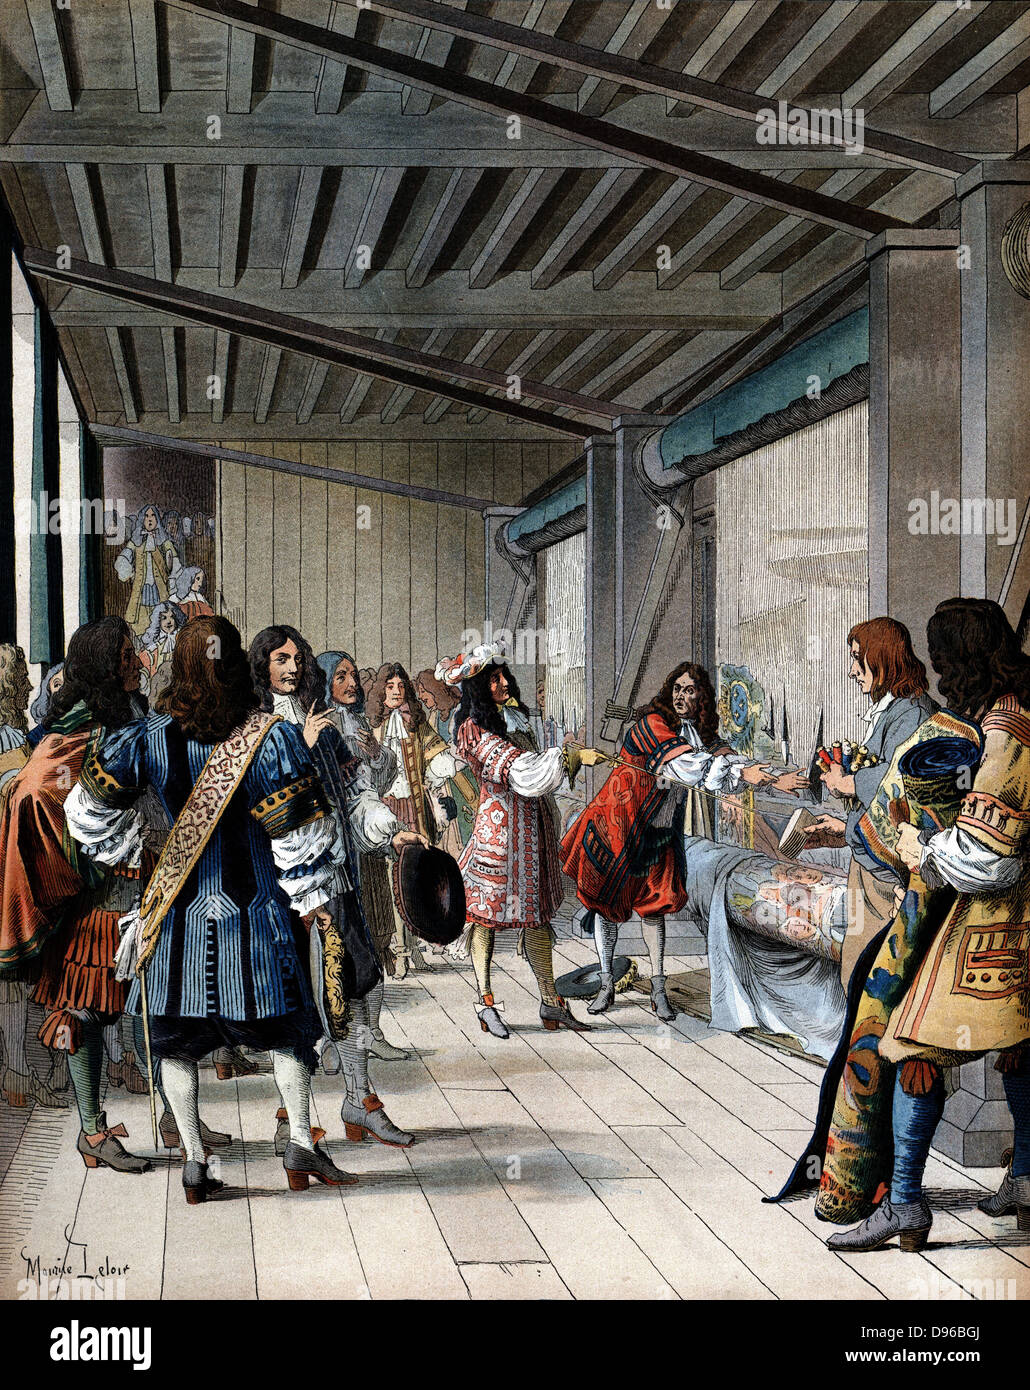 Louis XIV de France (1638-1715) visite de la Tapisserie des Gobelins fonctionne. Colbert, ministre des Finances de Louis et les Gobelins établie en usine Sèvres. Fin du xixe siècle chromolithographie Banque D'Images